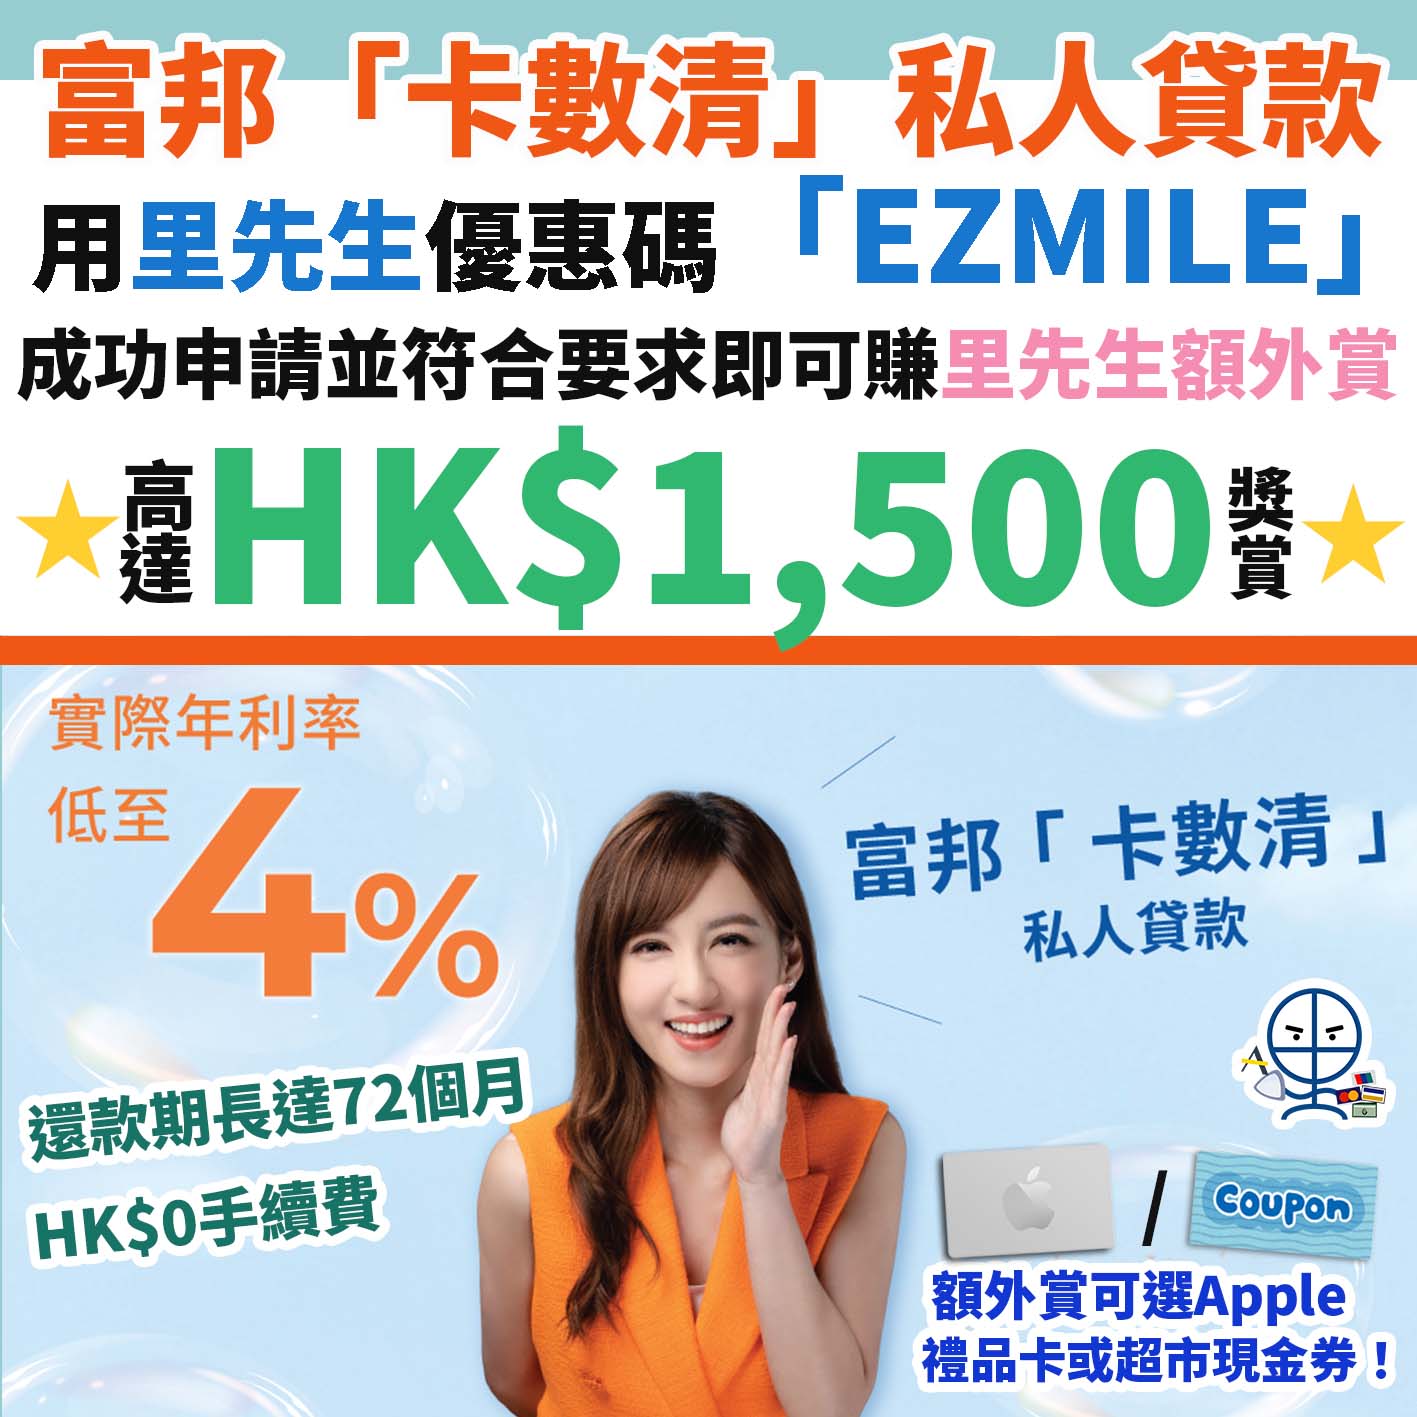 富邦 「卡數清」 私人貸款︱用里先生優惠碼「EZMILE」成功申請並符合要求即可賺額外HK$1,200 Apple禮品卡 / 超市現金券！另可再賺高達HK$300獎賞！實際年利率低至4％！還款期長至72個月！HK$0手續費！